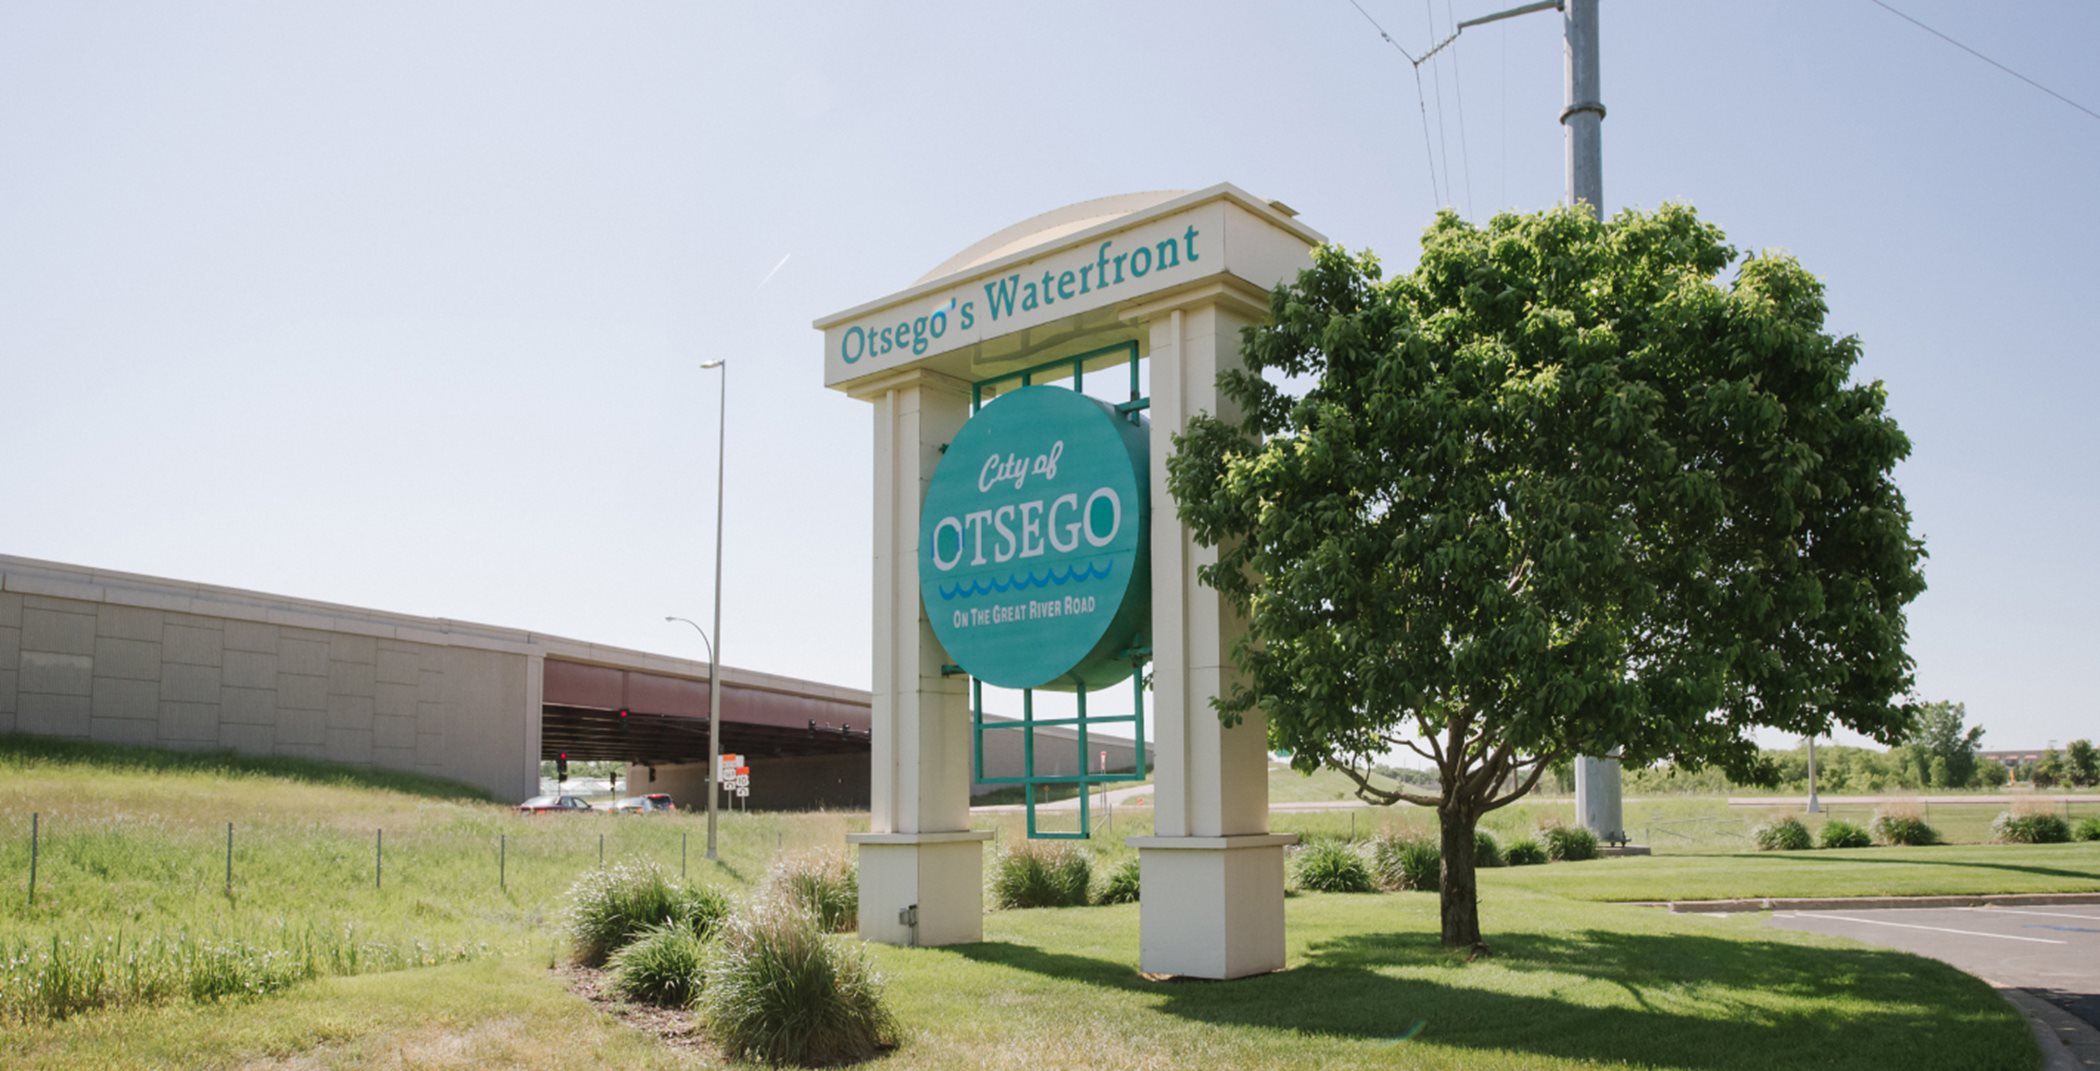 City of Otsego 